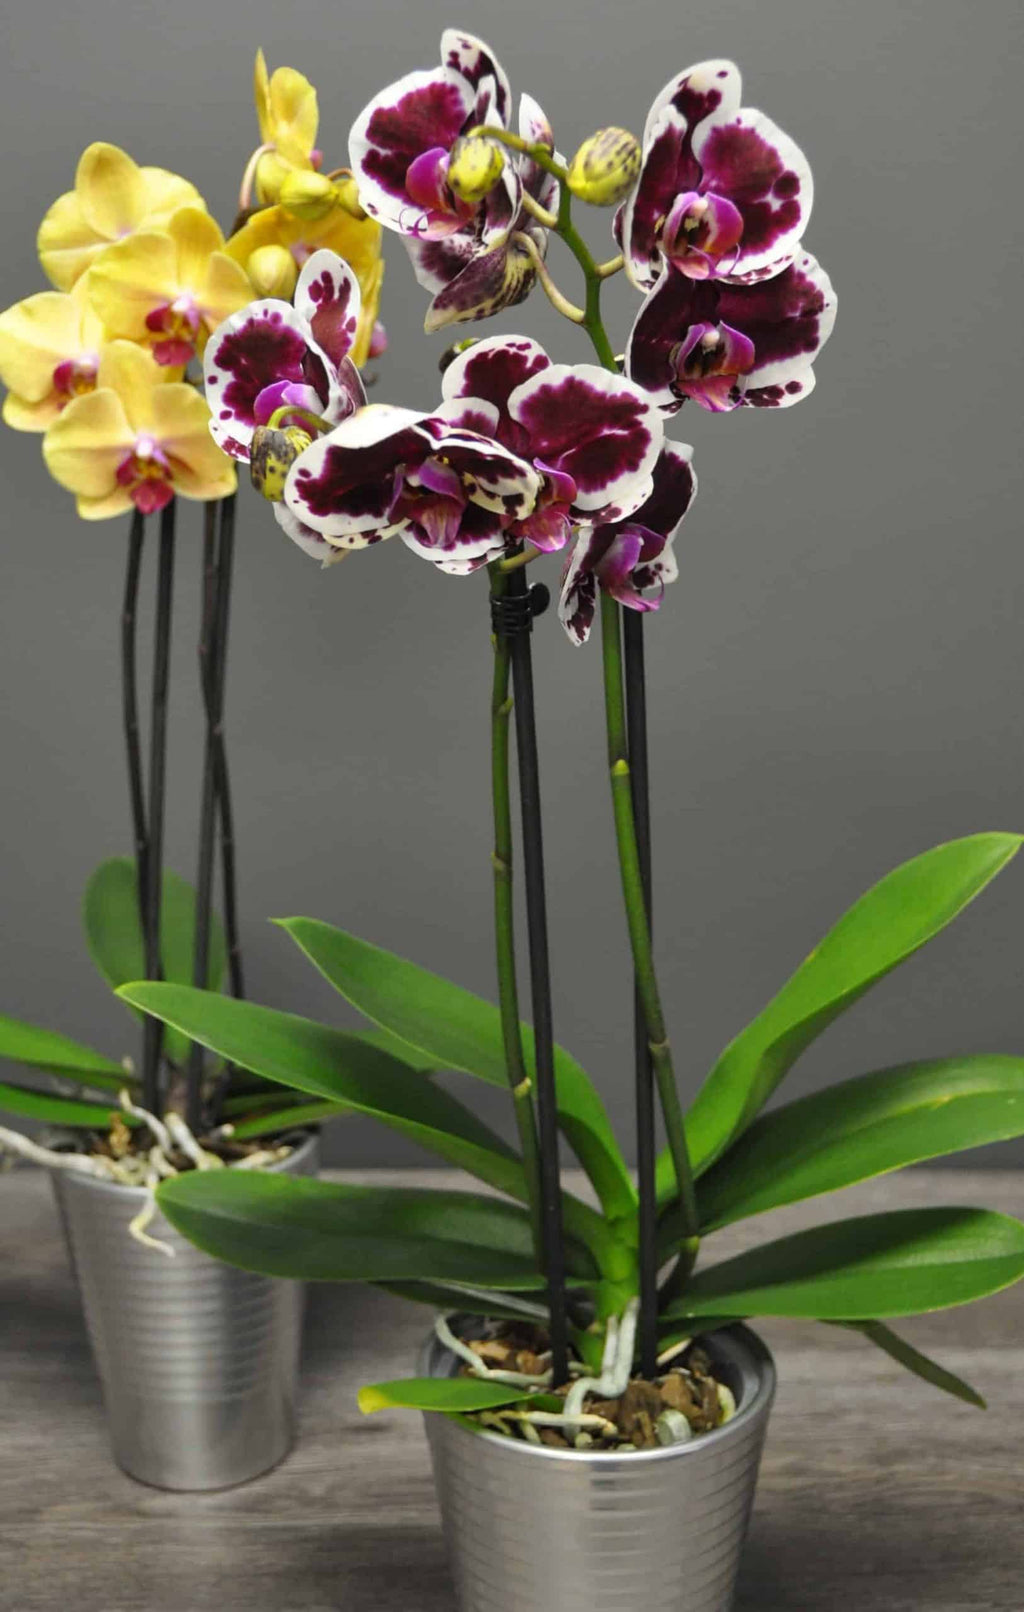 Orchidées : comment les faire refleurir?